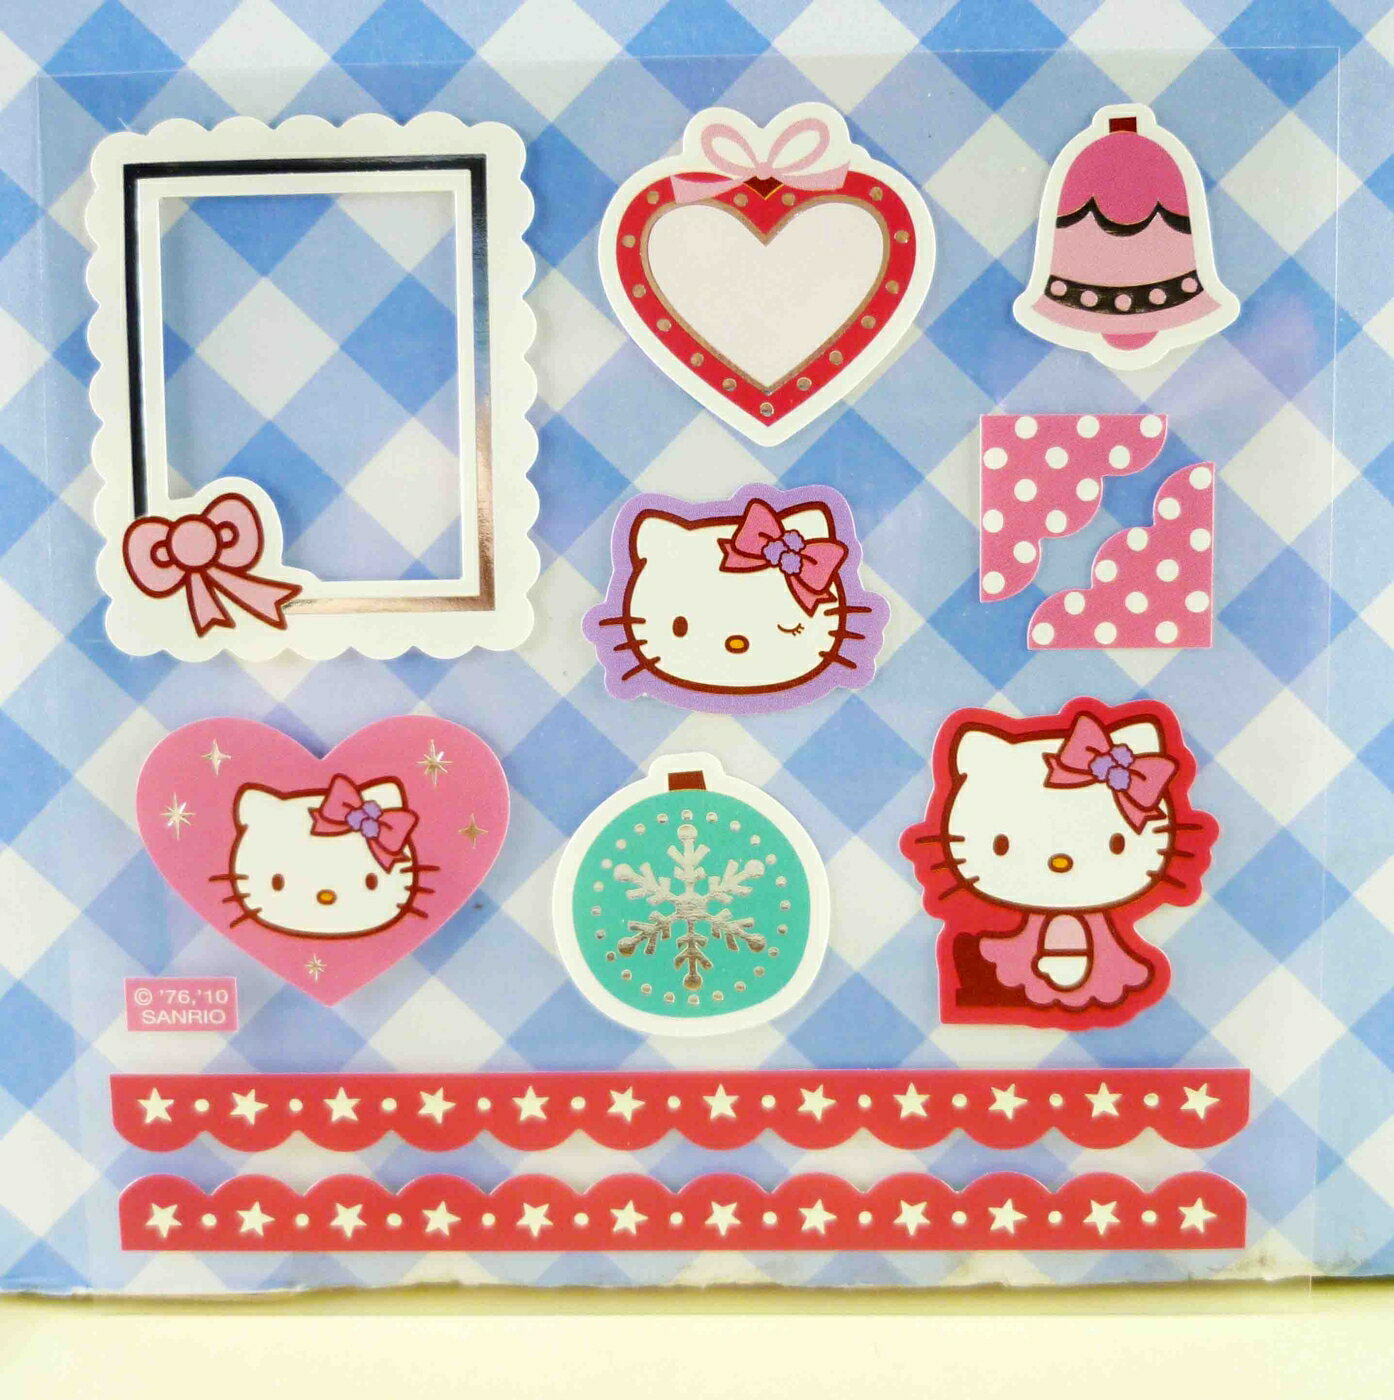 【震撼精品百貨】Hello Kitty 凱蒂貓 KITTY貼紙-閃亮紅線 震撼日式精品百貨